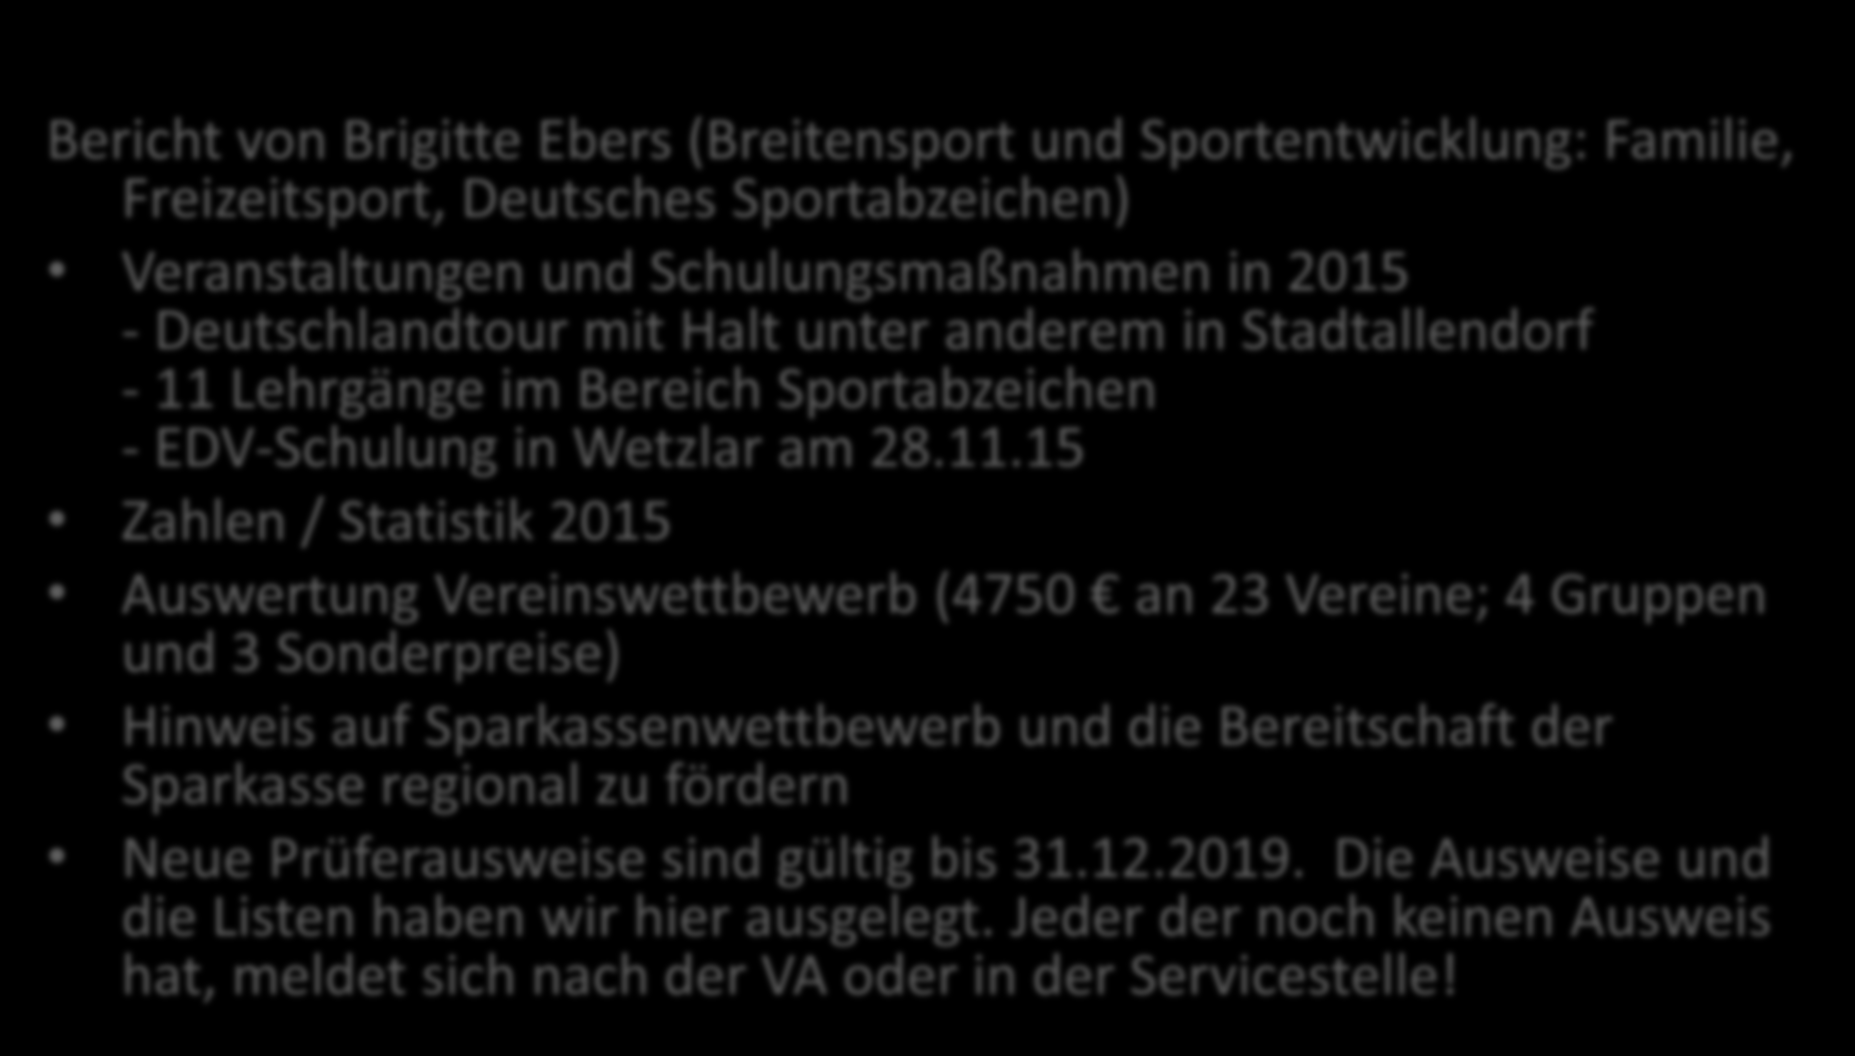 Bericht von der Frühjahrstagung Bericht von Brigitte Ebers (Breitensport und Sportentwicklung: Familie, Freizeitsport, Deutsches Sportabzeichen) Veranstaltungen und Schulungsmaßnahmen in 2015 -